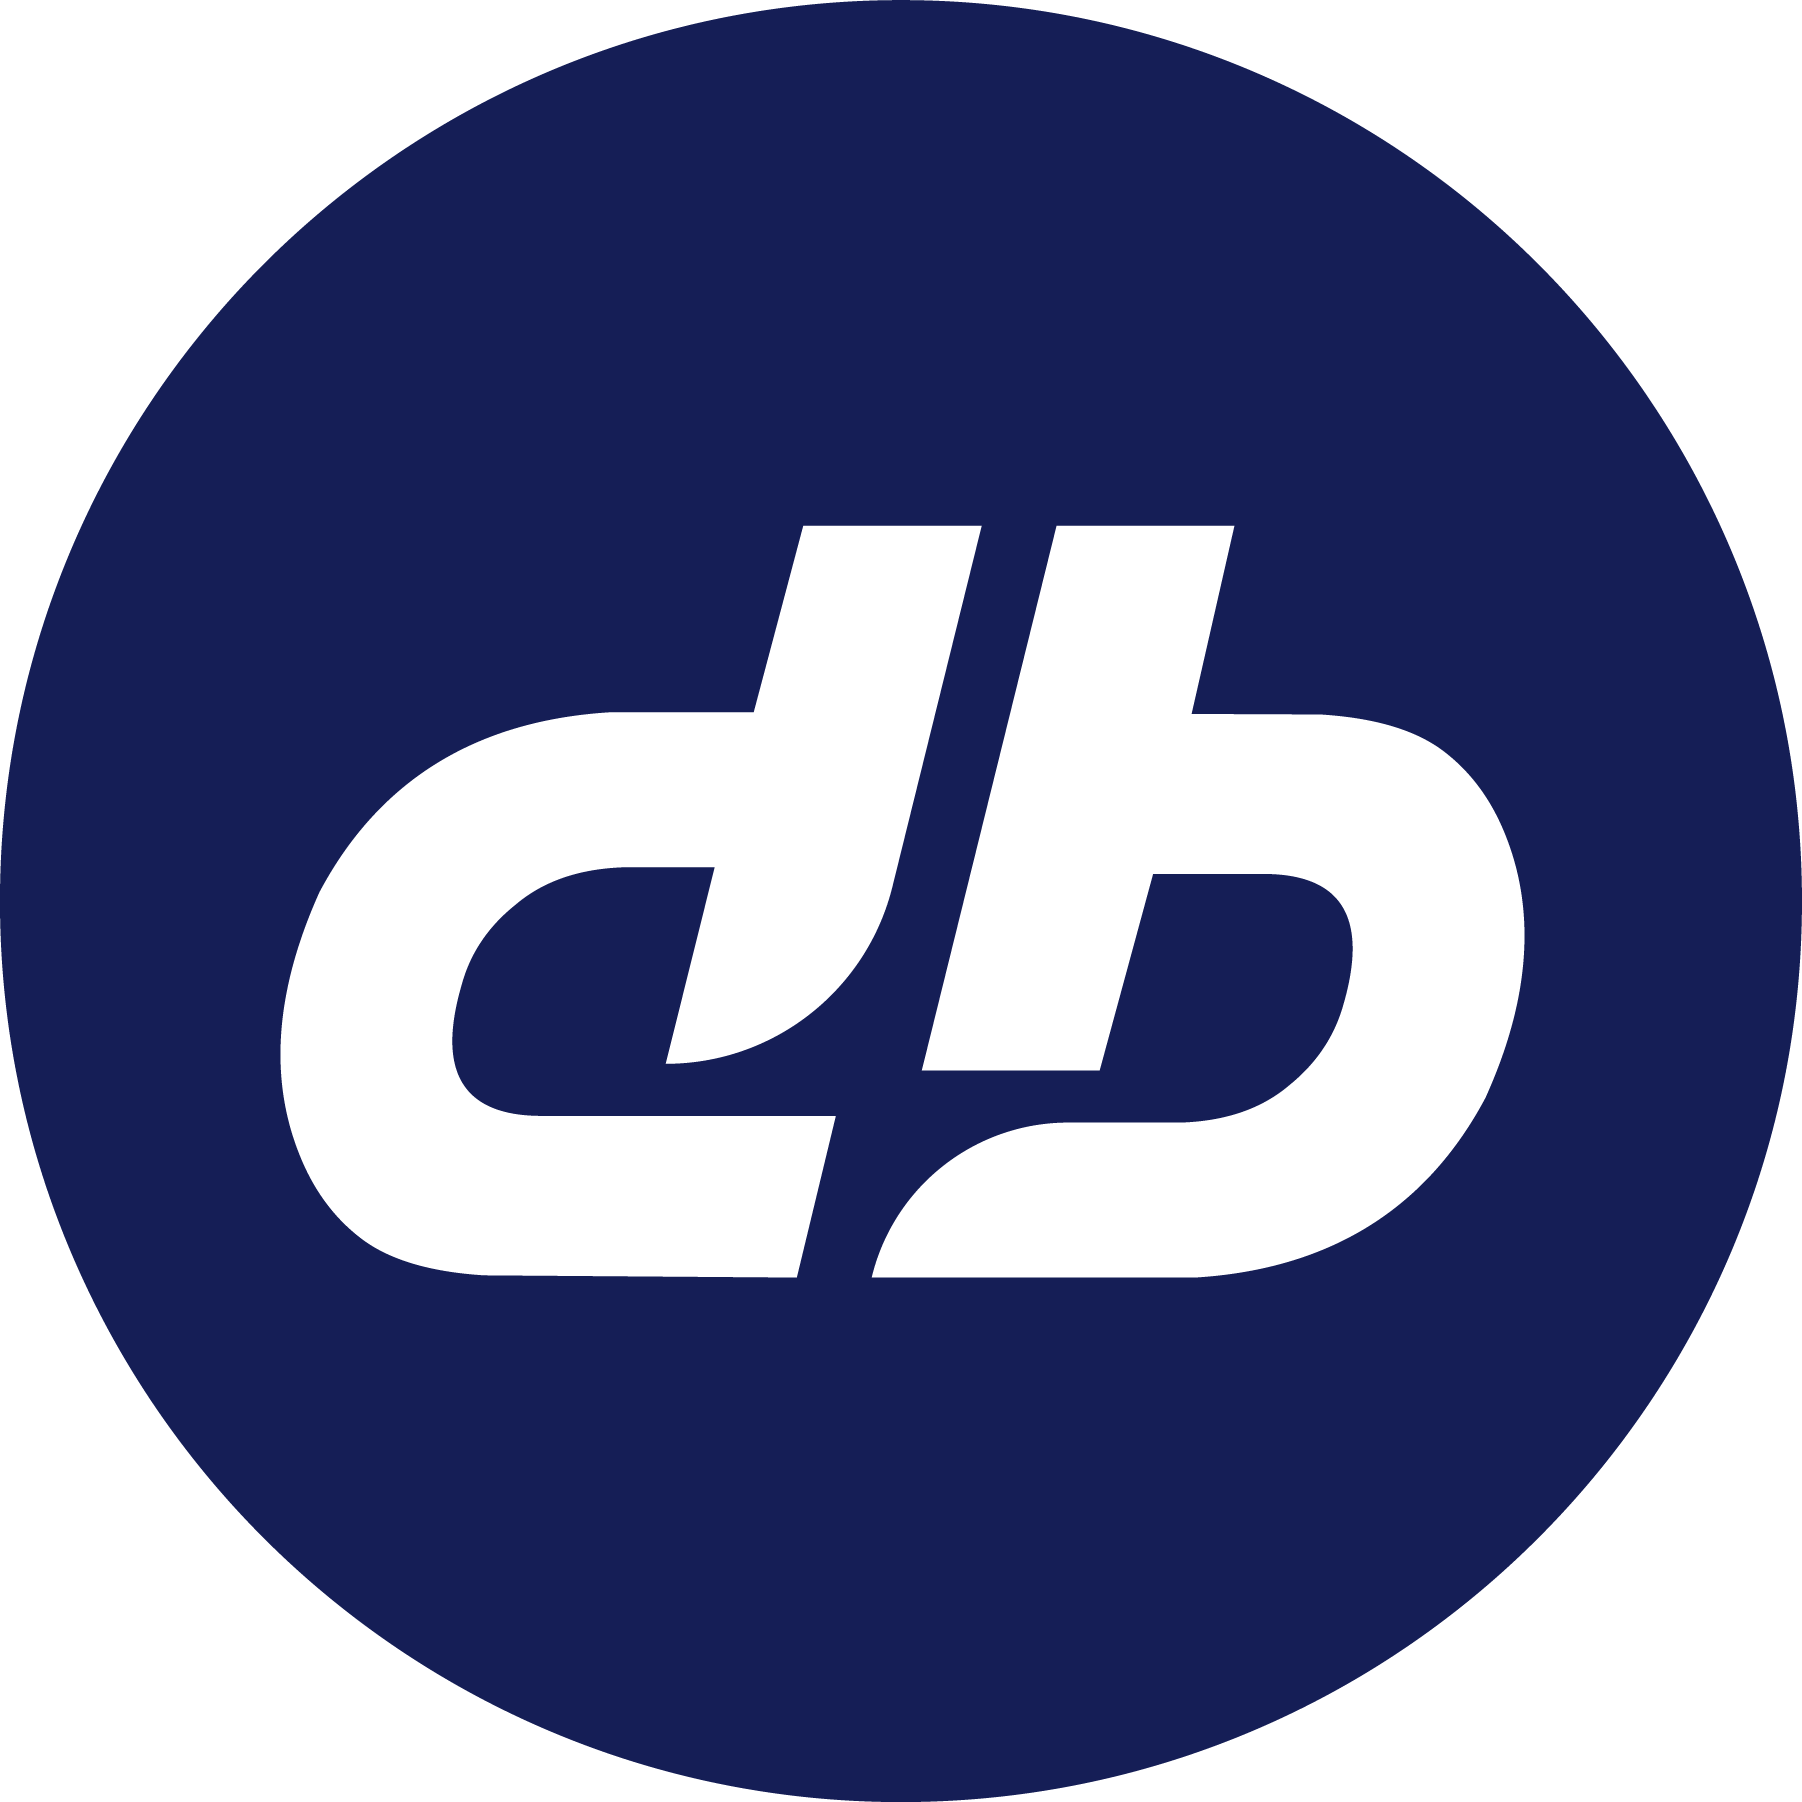 DBR logo